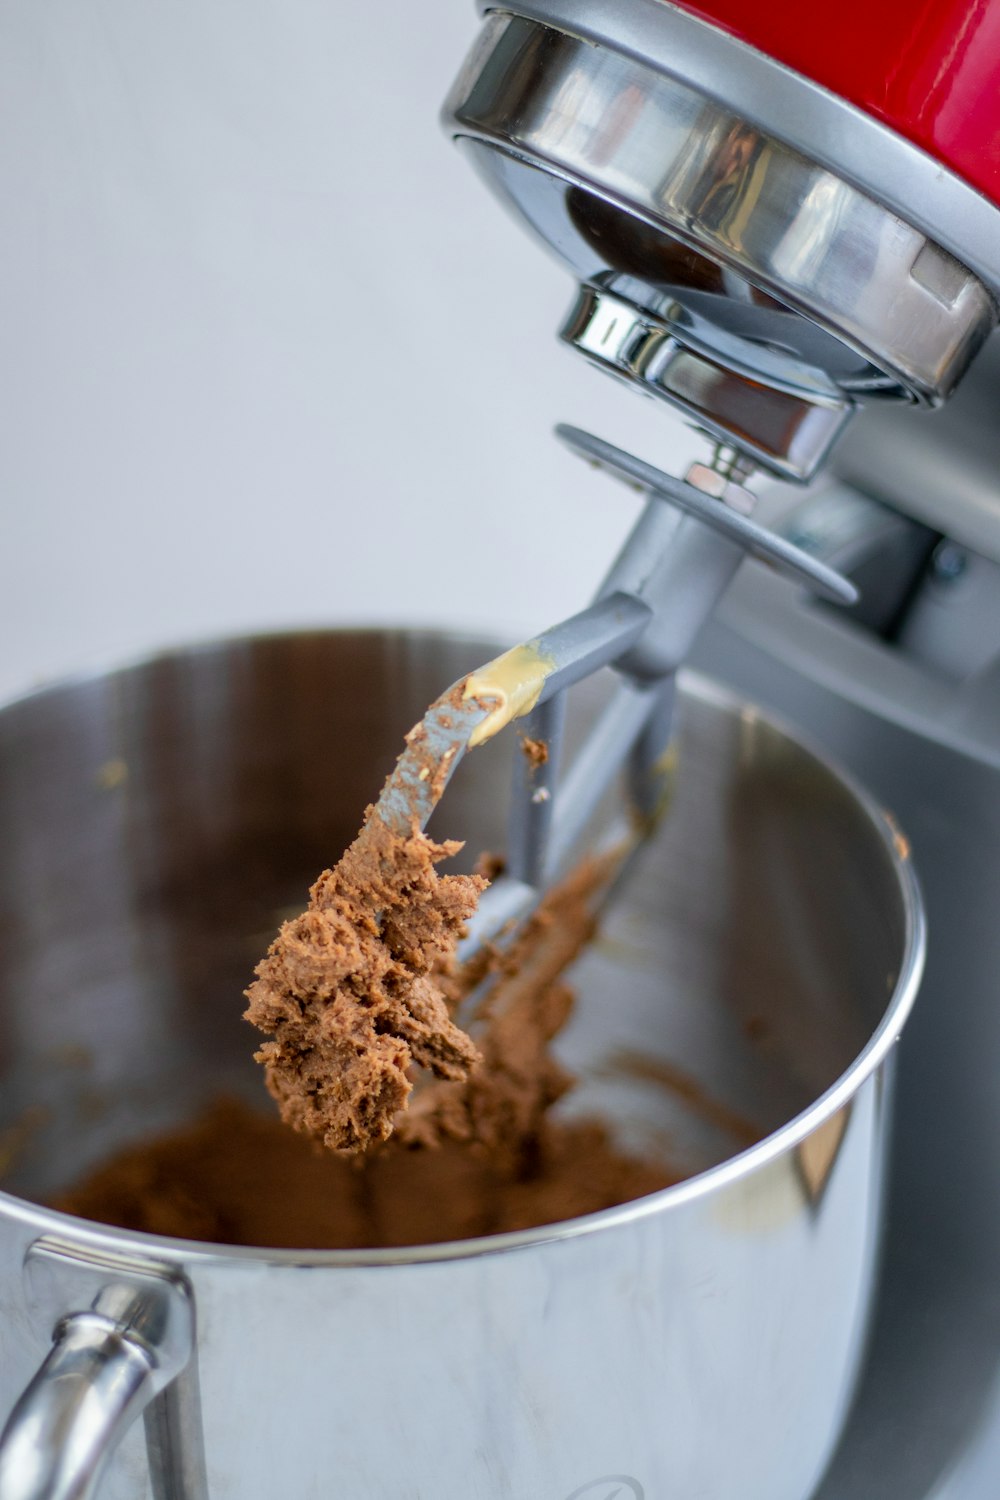 ステンレス製の調理鍋に茶色の粉